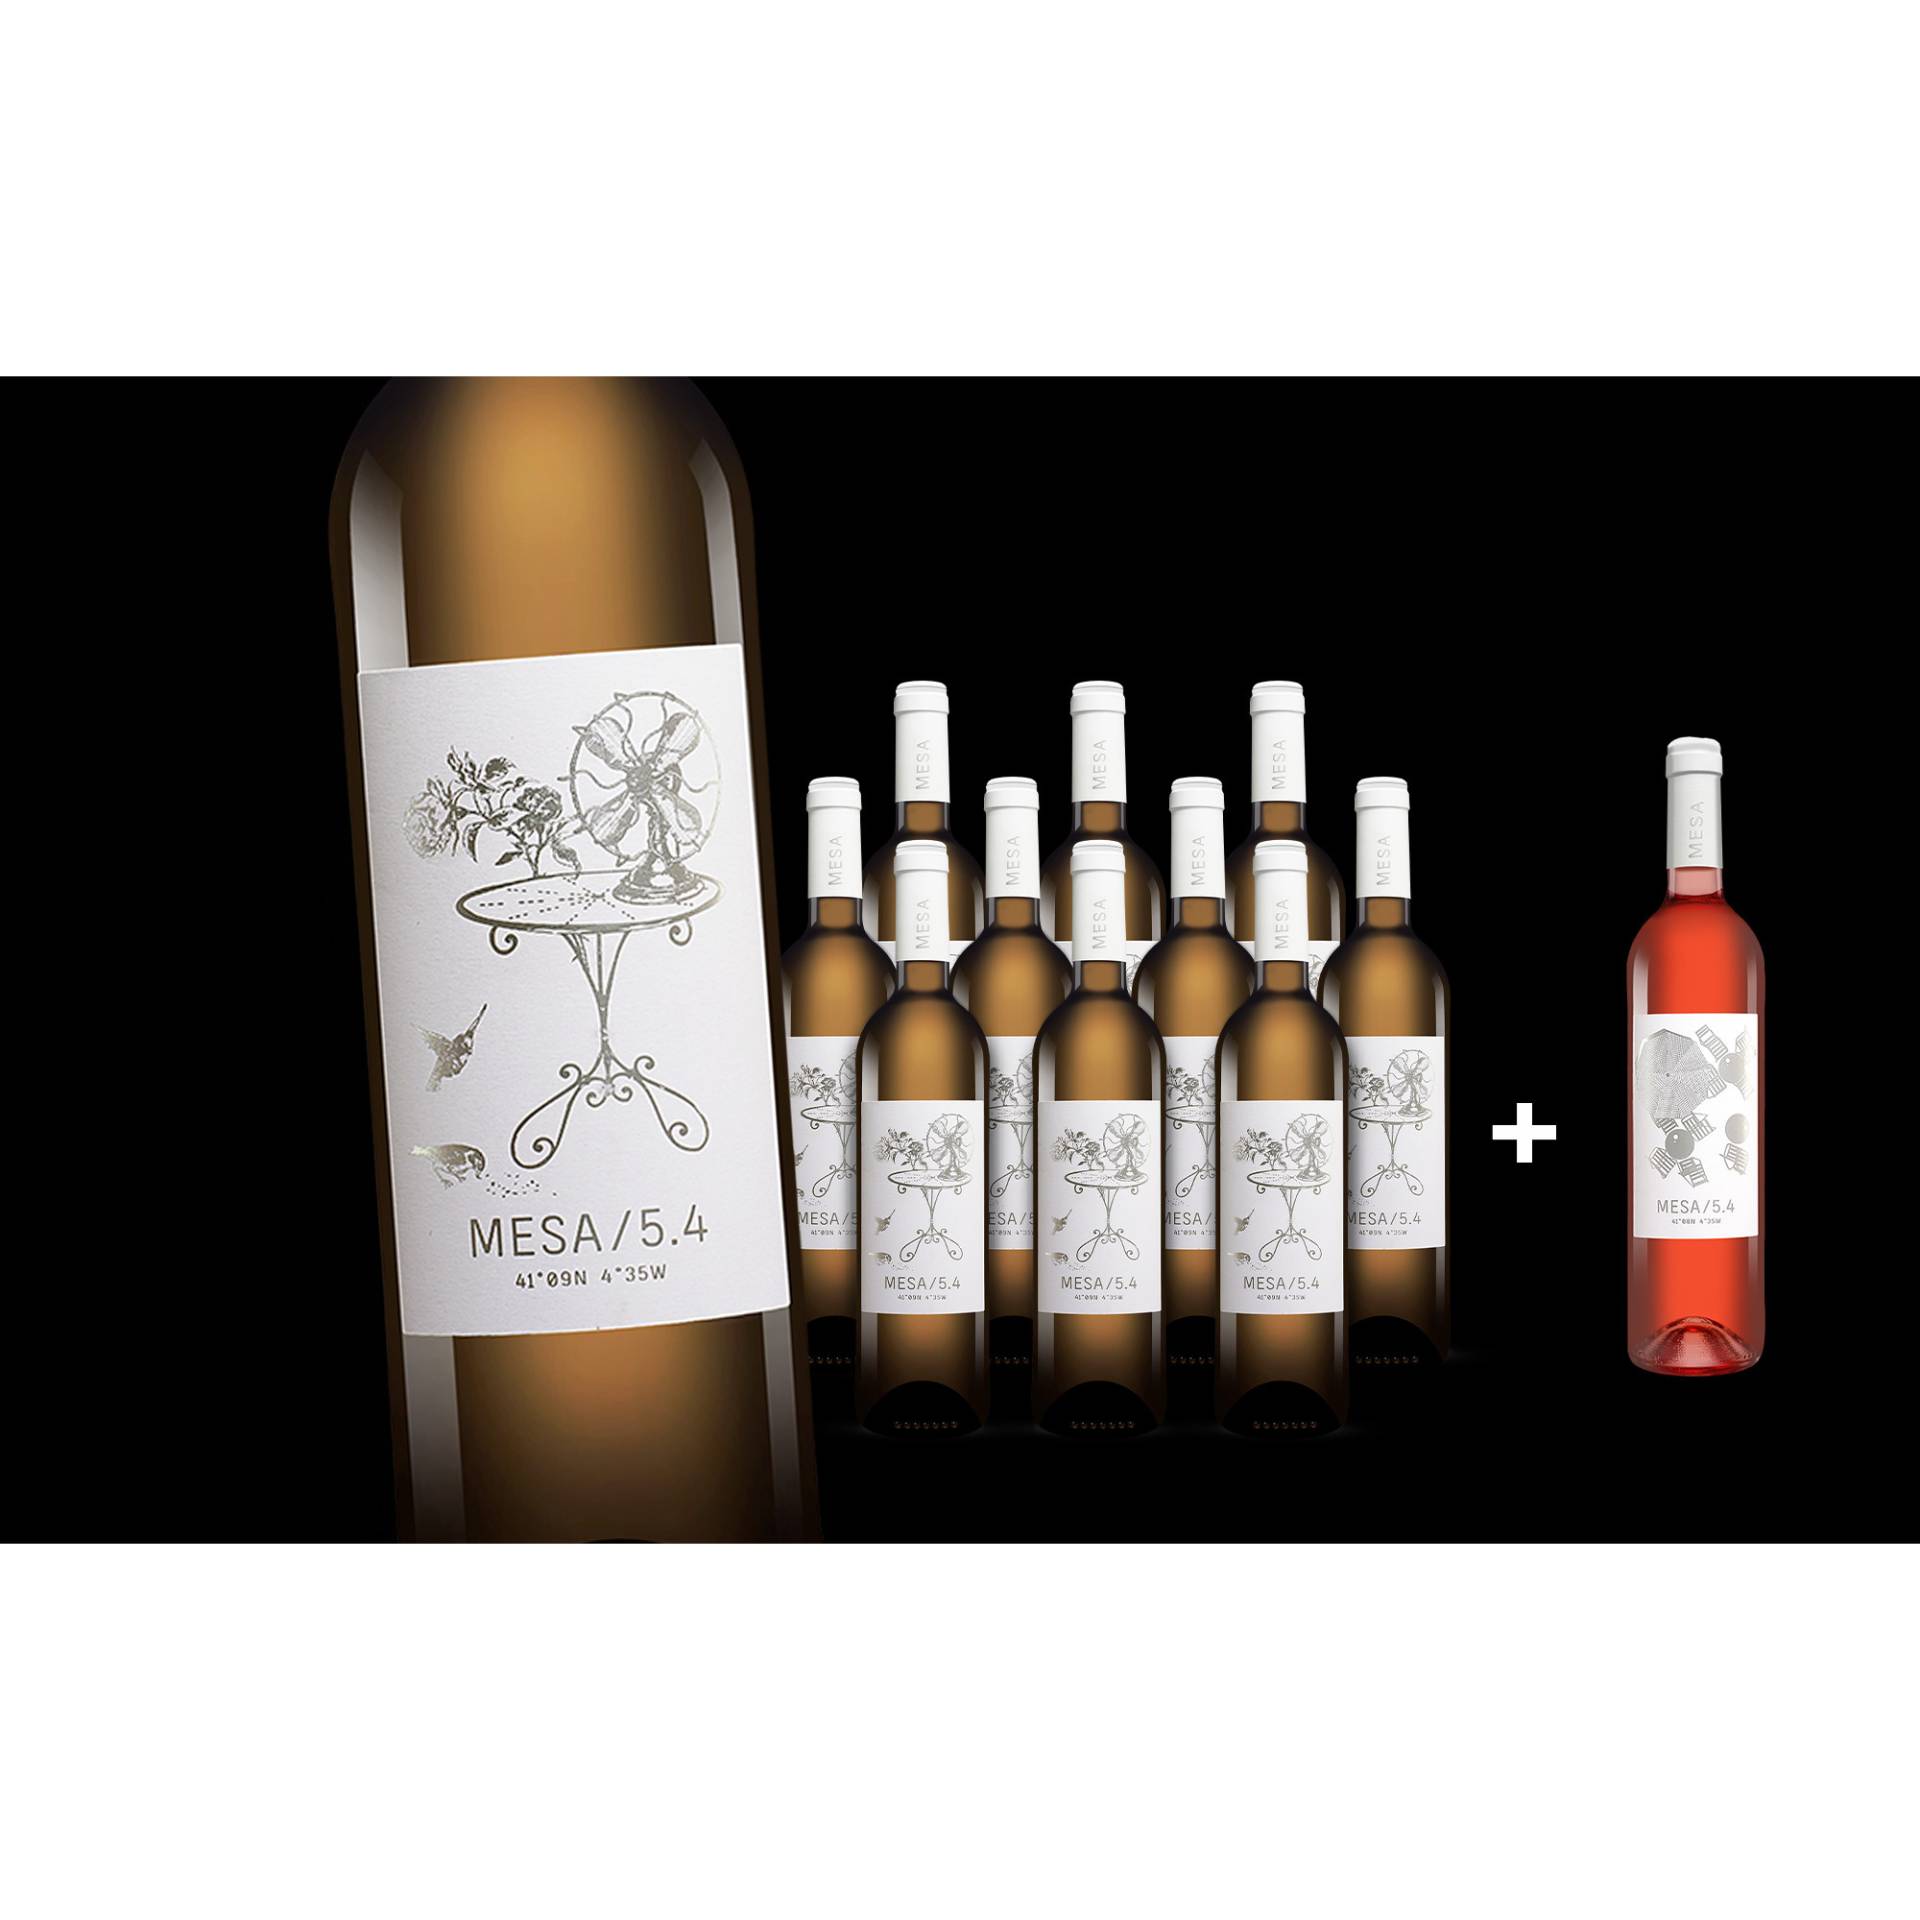 MESA/5.4 Blanco  9L 12.5% Vol. Weinpaket aus Spanien von Wein & Vinos - Das Mesa-Projekt